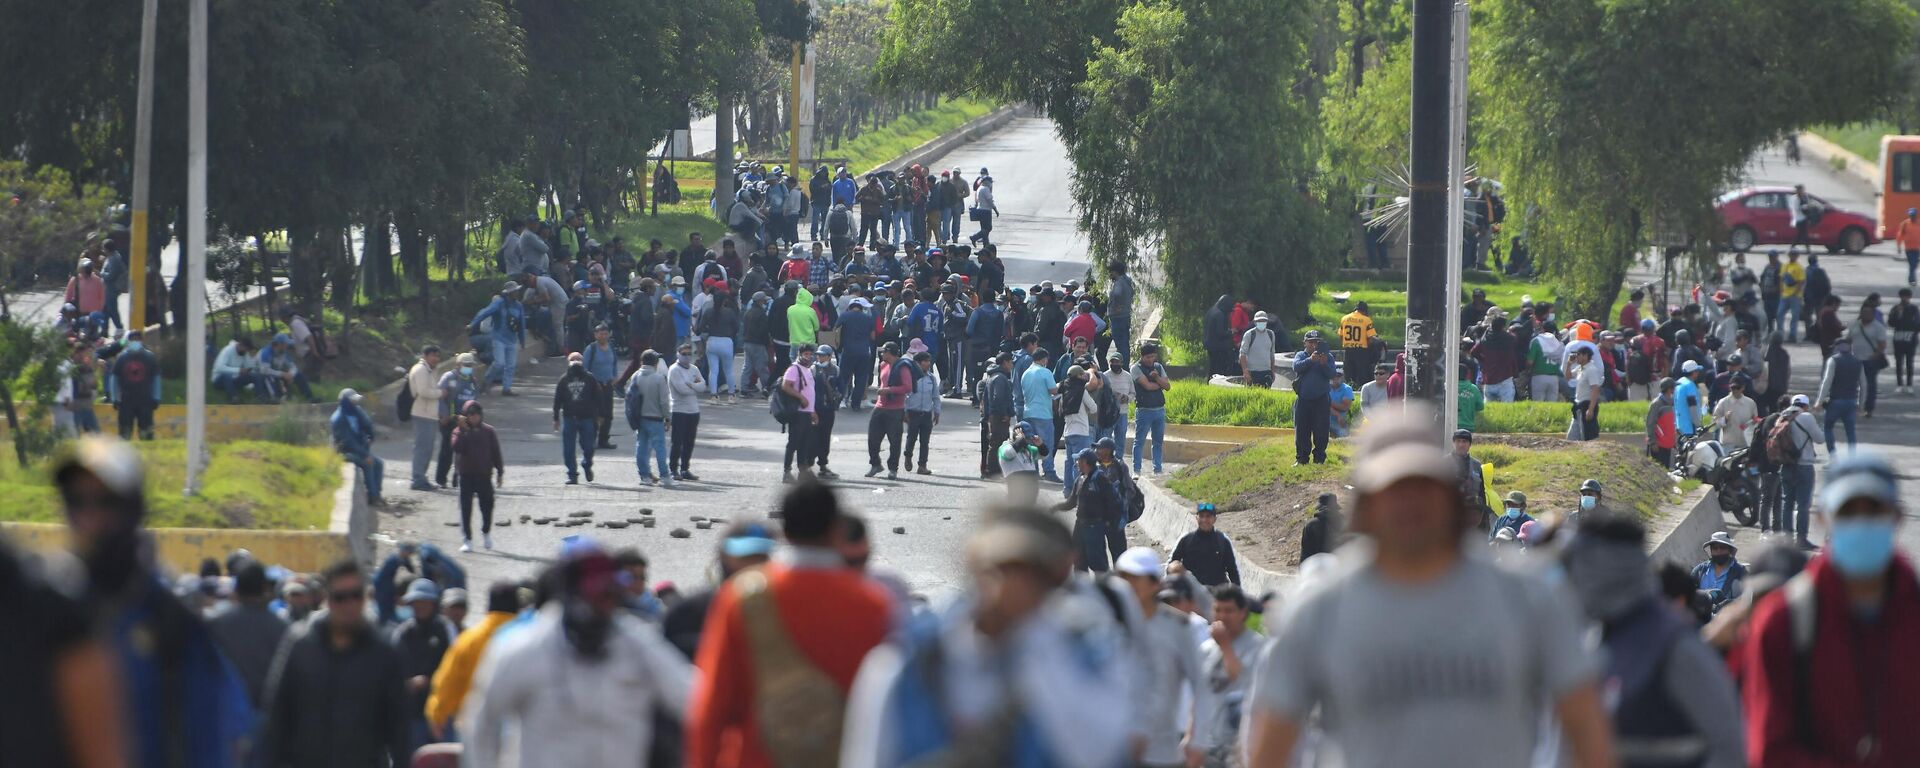 Peru'da hükümet karşıtı protestolarda eylemciler, ülkenin en büyük ikinci kentindeki havaalanına zorla girmeye çalıştı. Polisin müdahalesi sonucu 3 kişi yaralandı, çok sayıda kişi gözaltına alındı. - Sputnik Türkiye, 1920, 20.01.2023